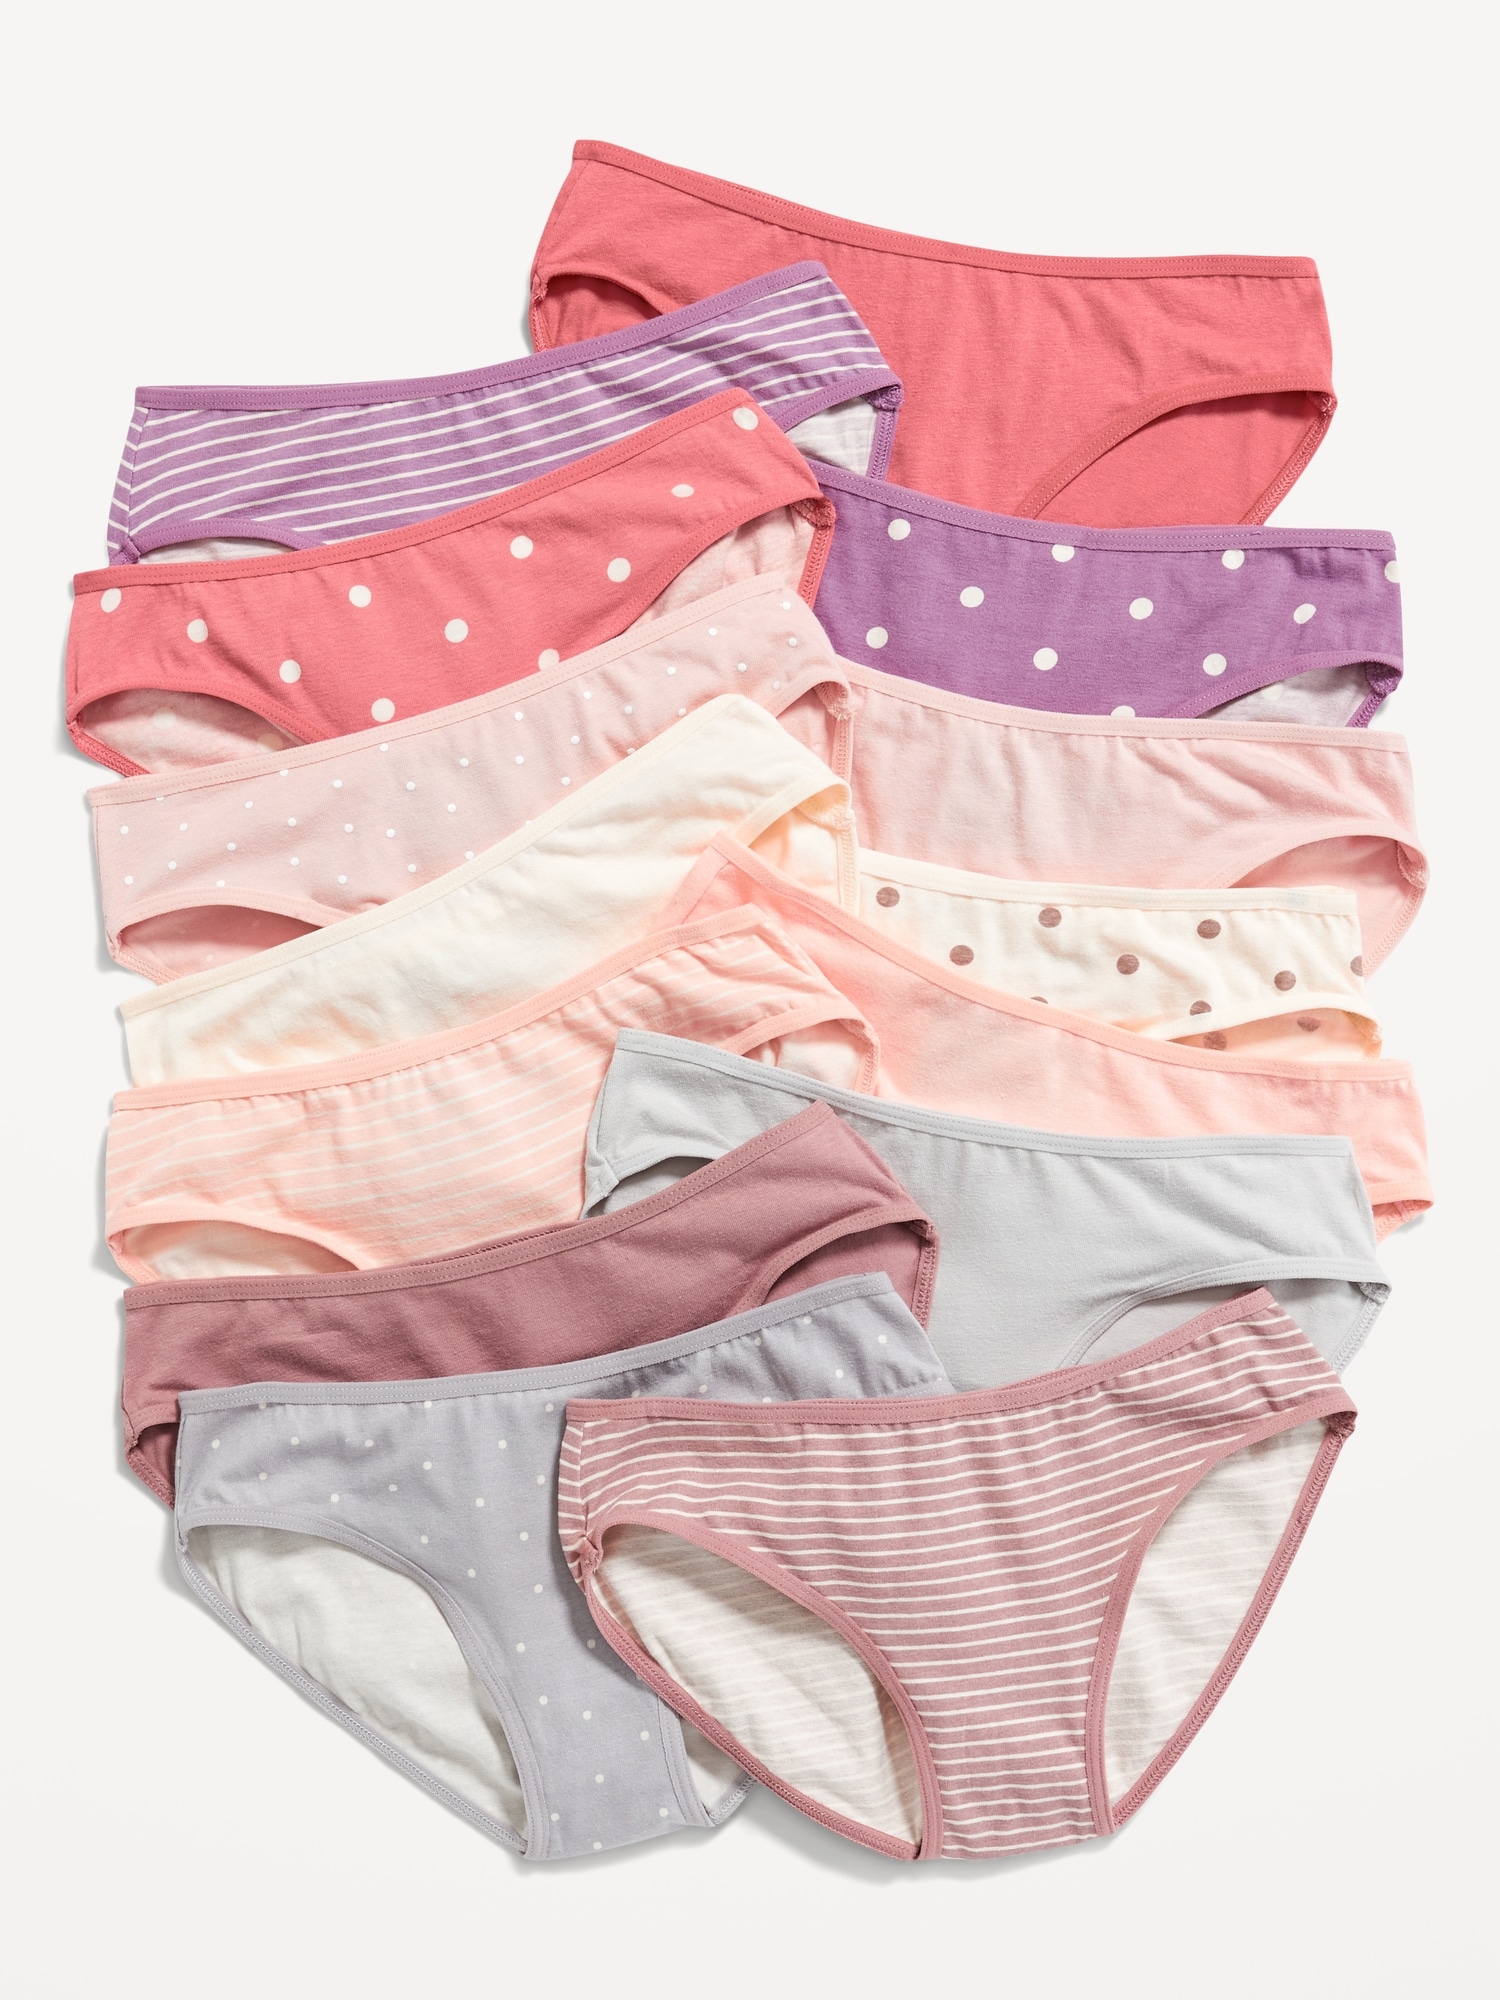 Old Navy Bikini Underwear 14-Pack for Girls pink. 1